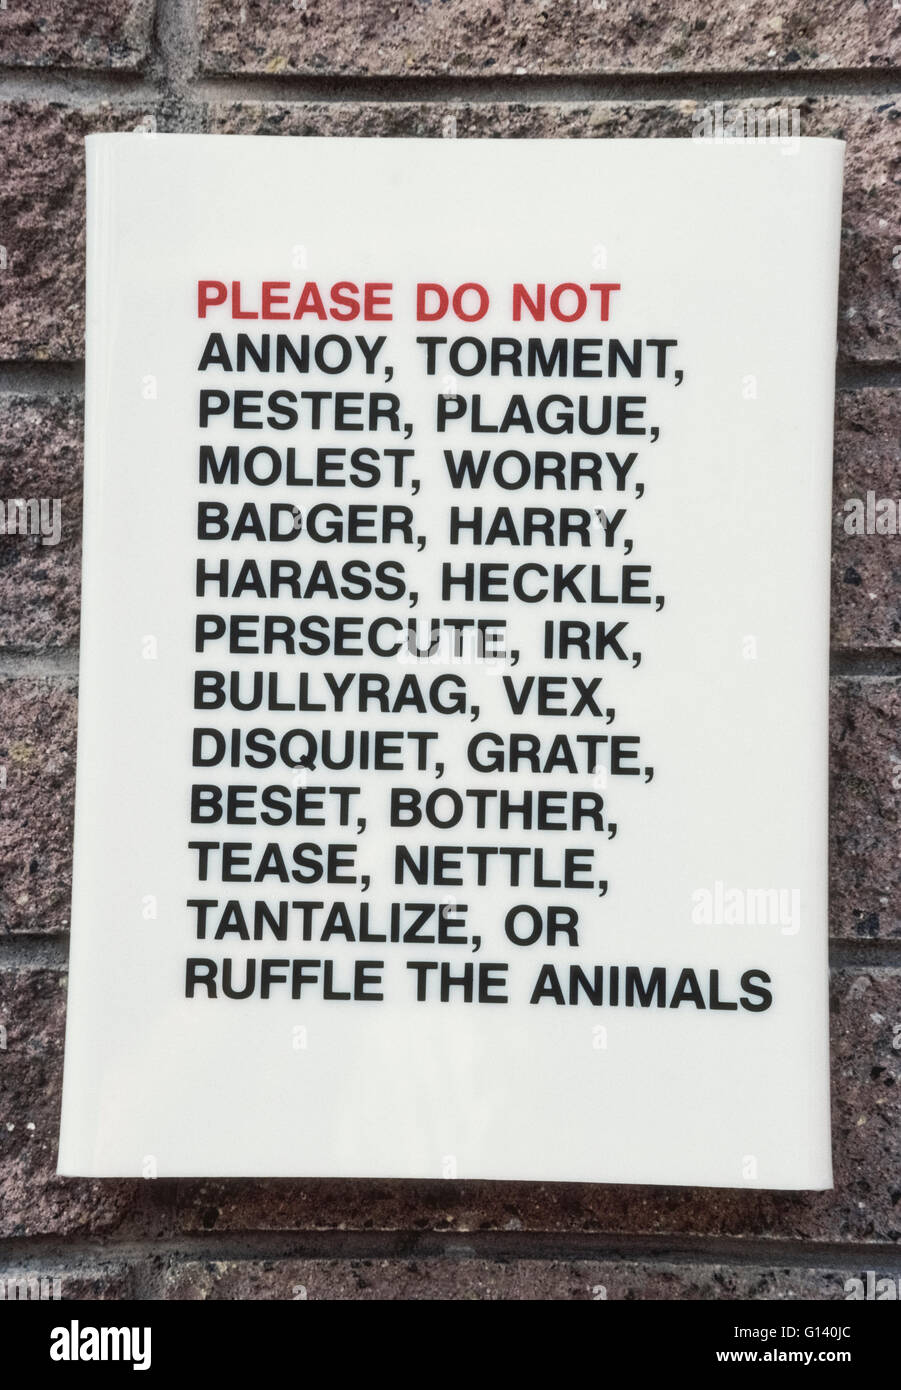 Un semplice ma intrigante segno con un ampio elenco di parole chiede ai visitatori di non maltrattare gli animali presso il famoso Zoo di San Diego a San Diego, California, Stati Uniti d'America. Si richiede cortesemente zoogoers per non infastidire, tormento, pester, peste, molesta, preoccuparsi, badger, Harry, molestare, heckle, perseguitare, irk, bullyrag, vex, inquietudine, griglia, migliore, Briga, tease, Ortica, stuzzicate o arruffare i più di 3.500 specie rare e minacciate gli animali che vivono lì. Foto Stock